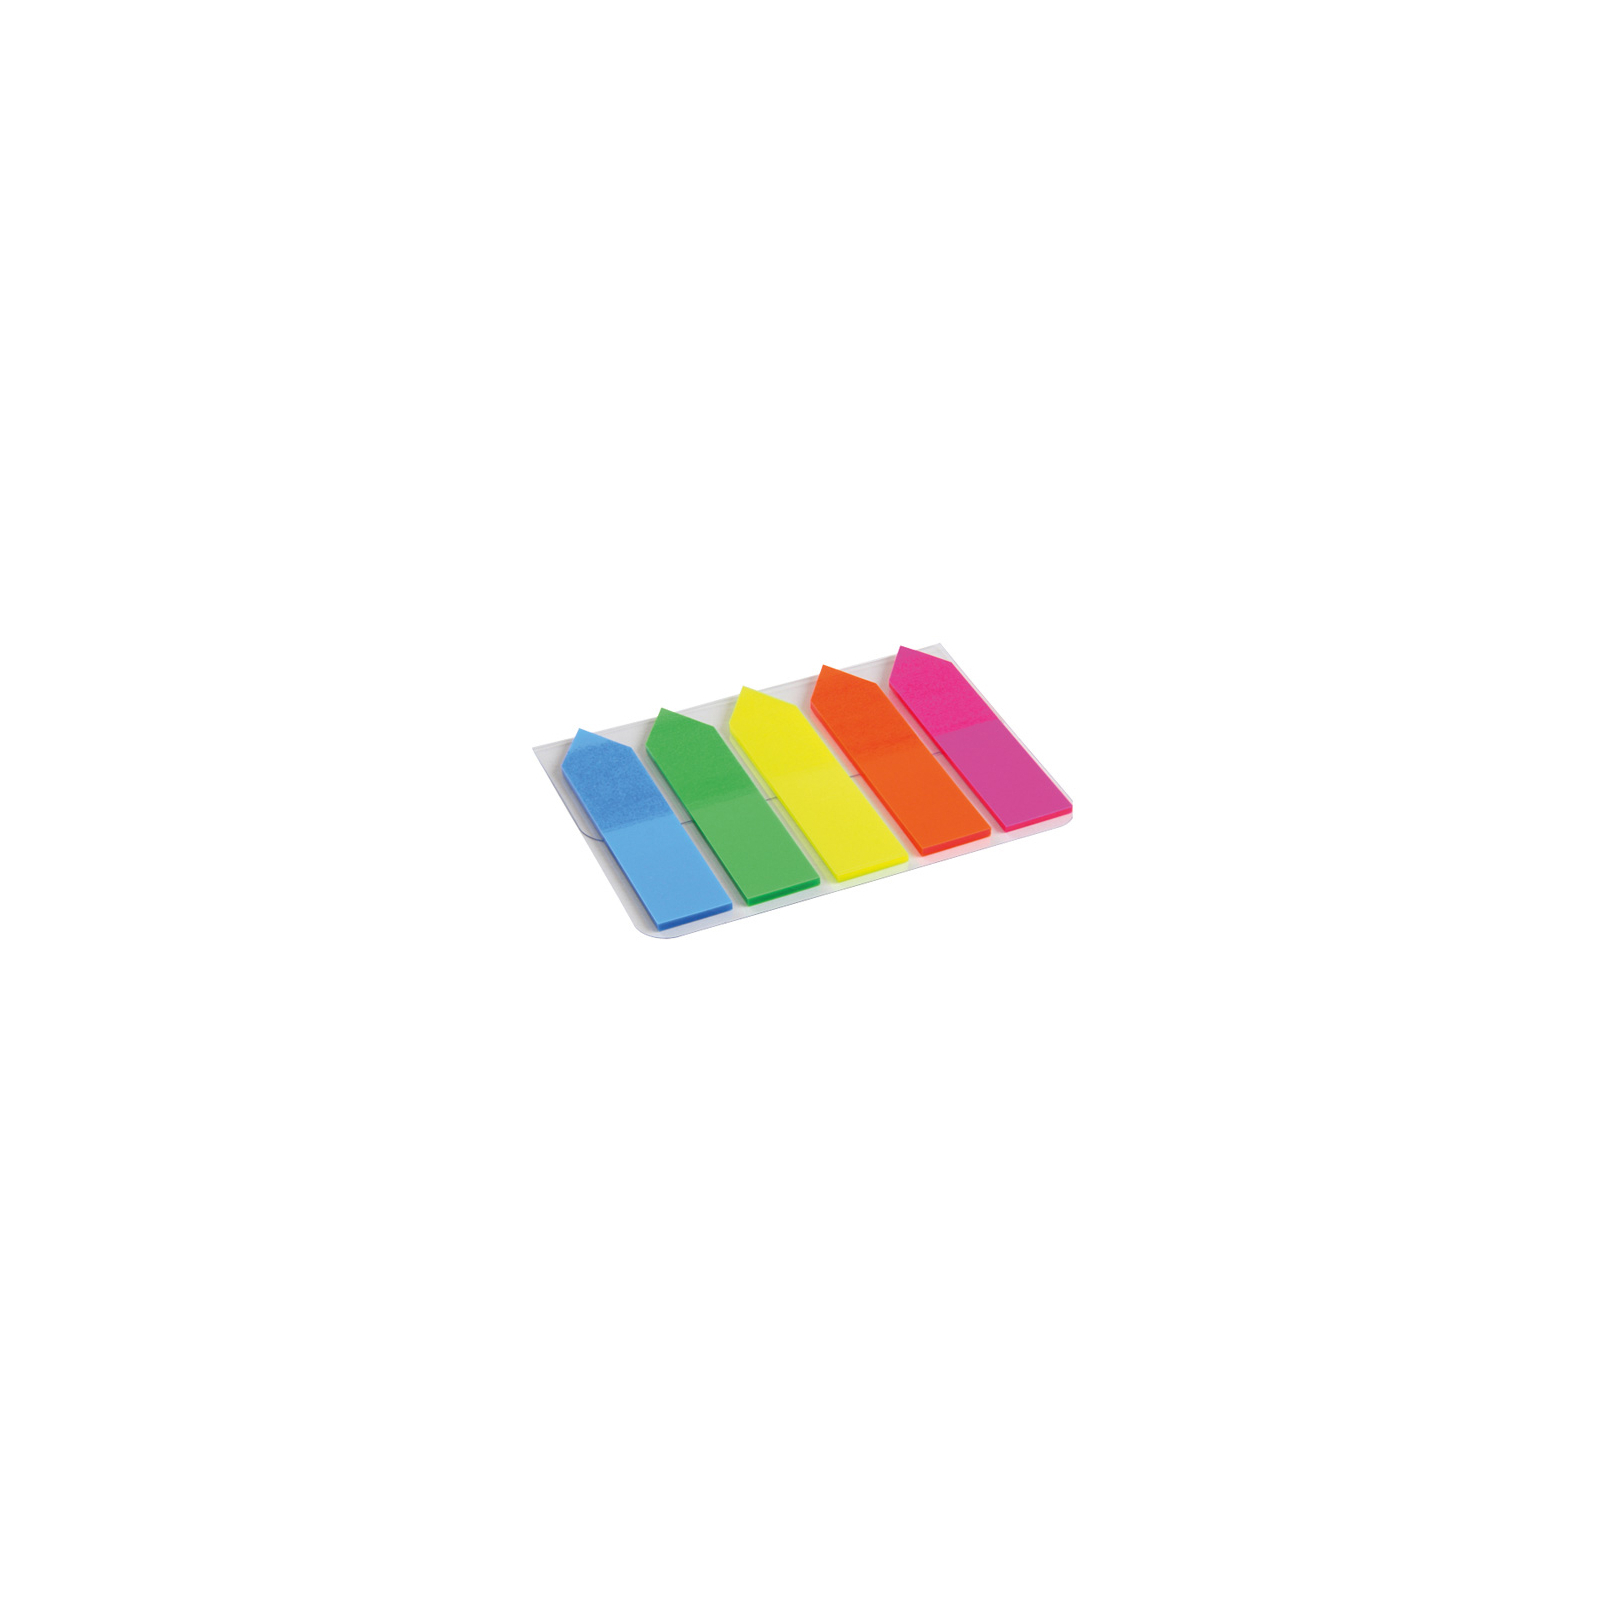 Стікер-закладка Axent Plastic bookmarks 5х12х50mm, 125шт, arrows, neon colors mix (2440-02-А)